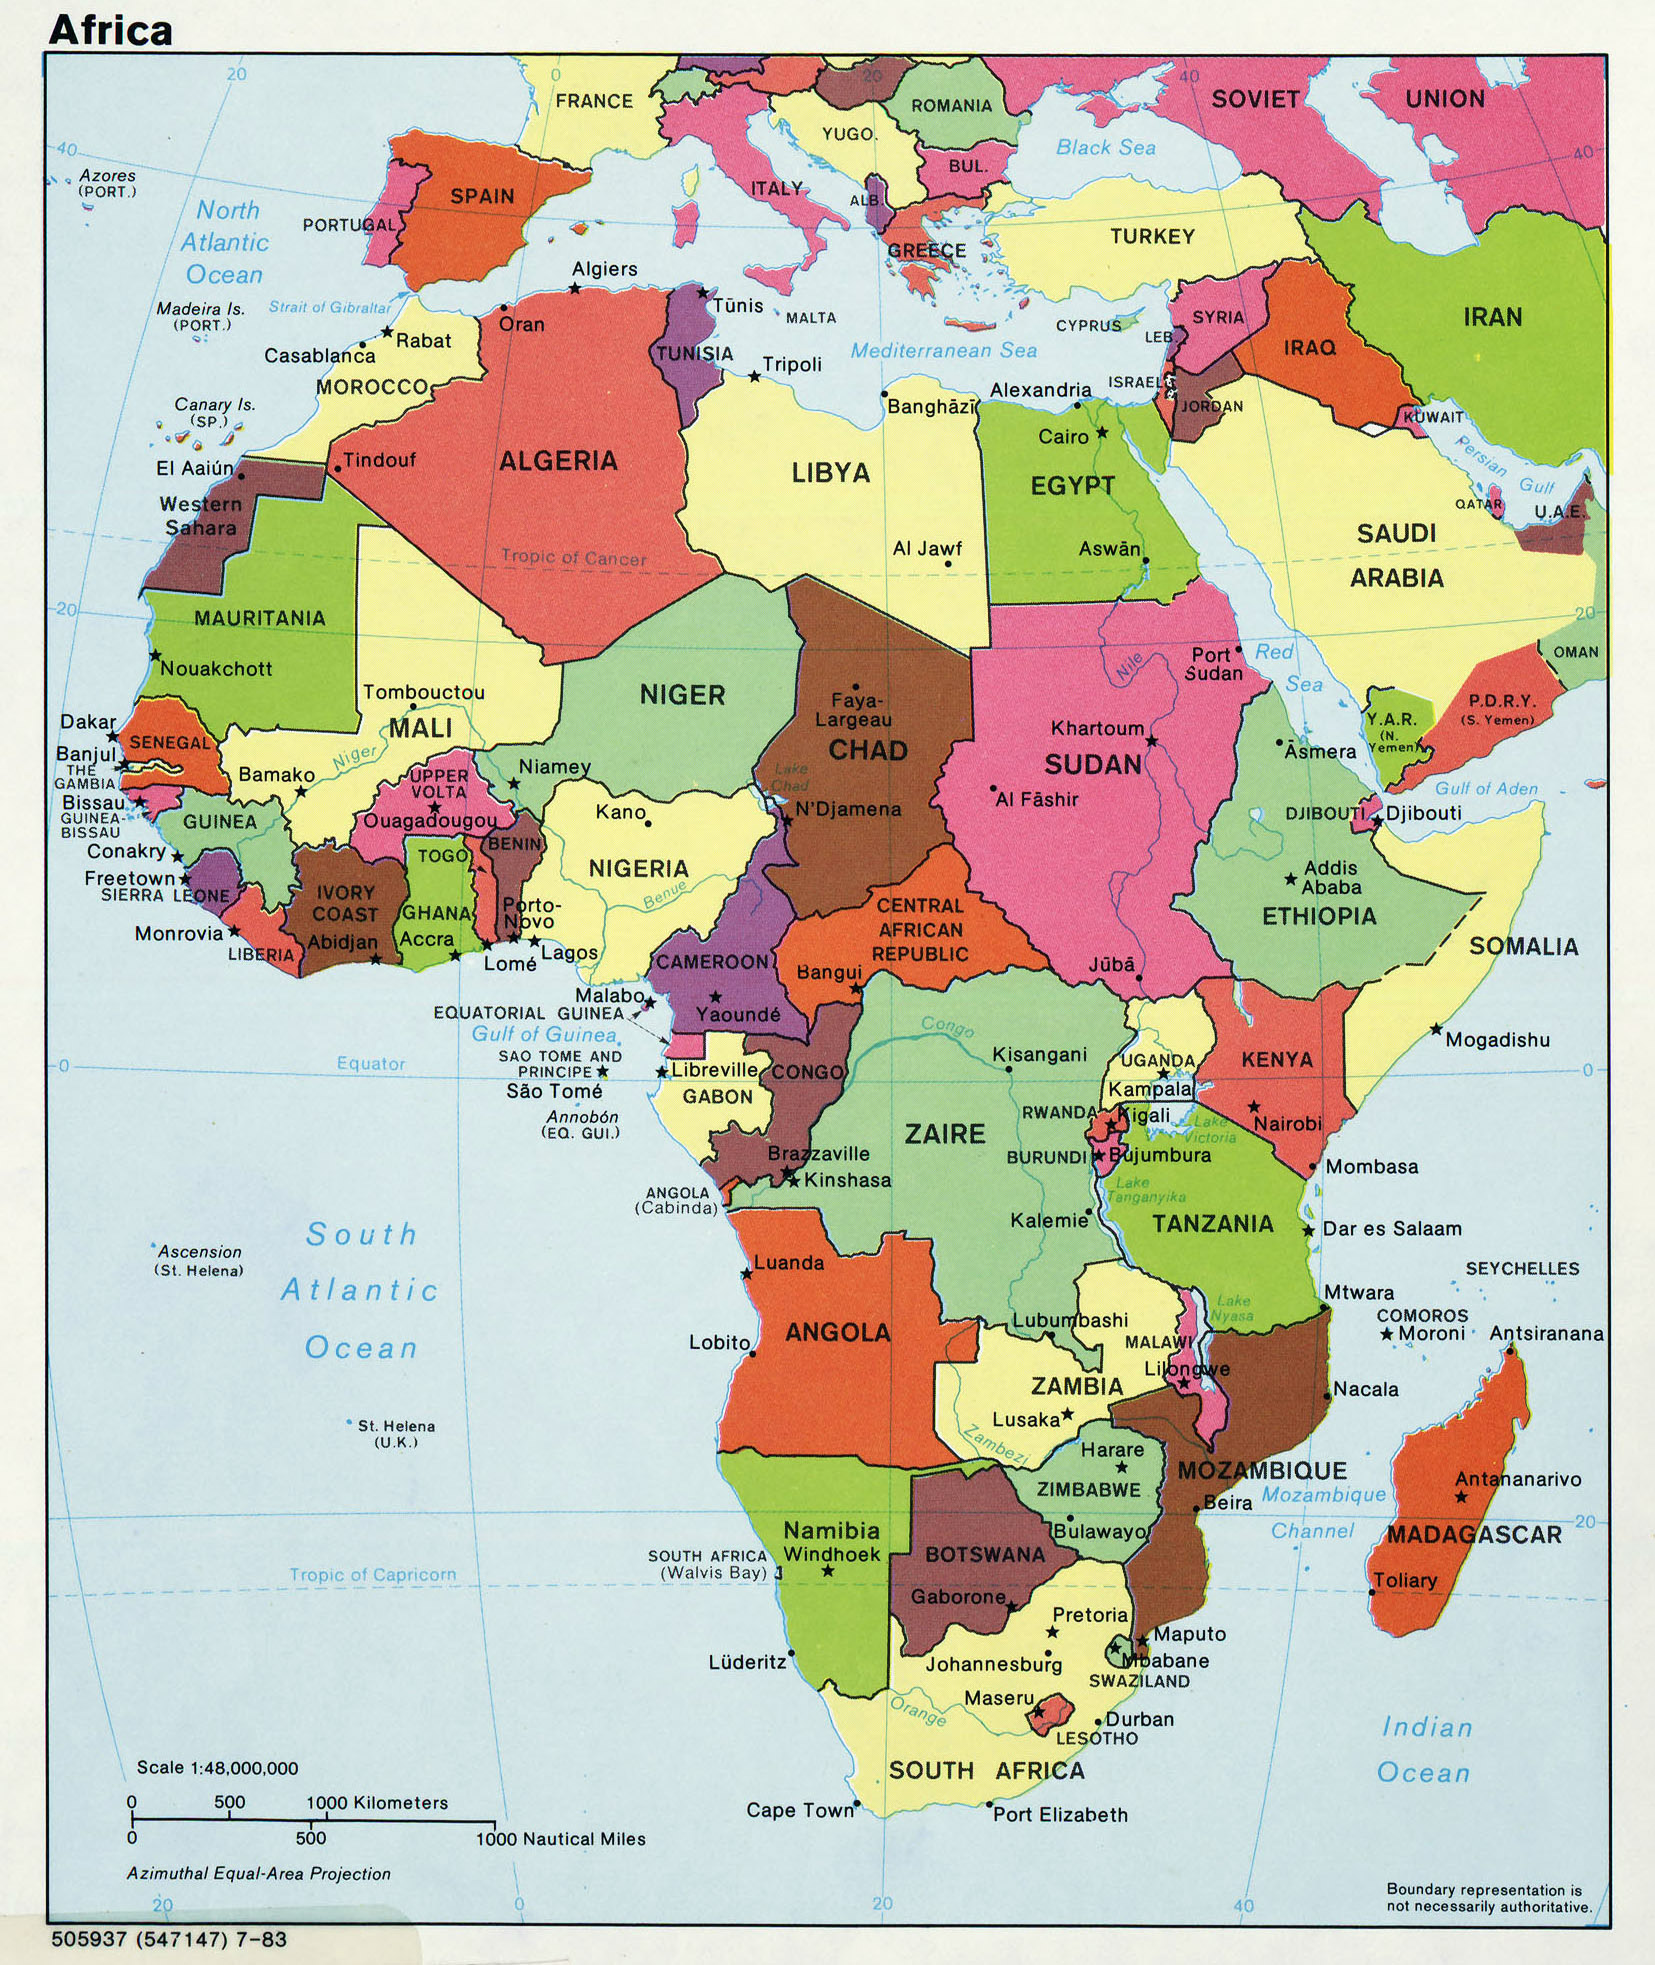 Mapa Politico De Africa Mapa De Paises Y Ciudades De Africa National Images 8692